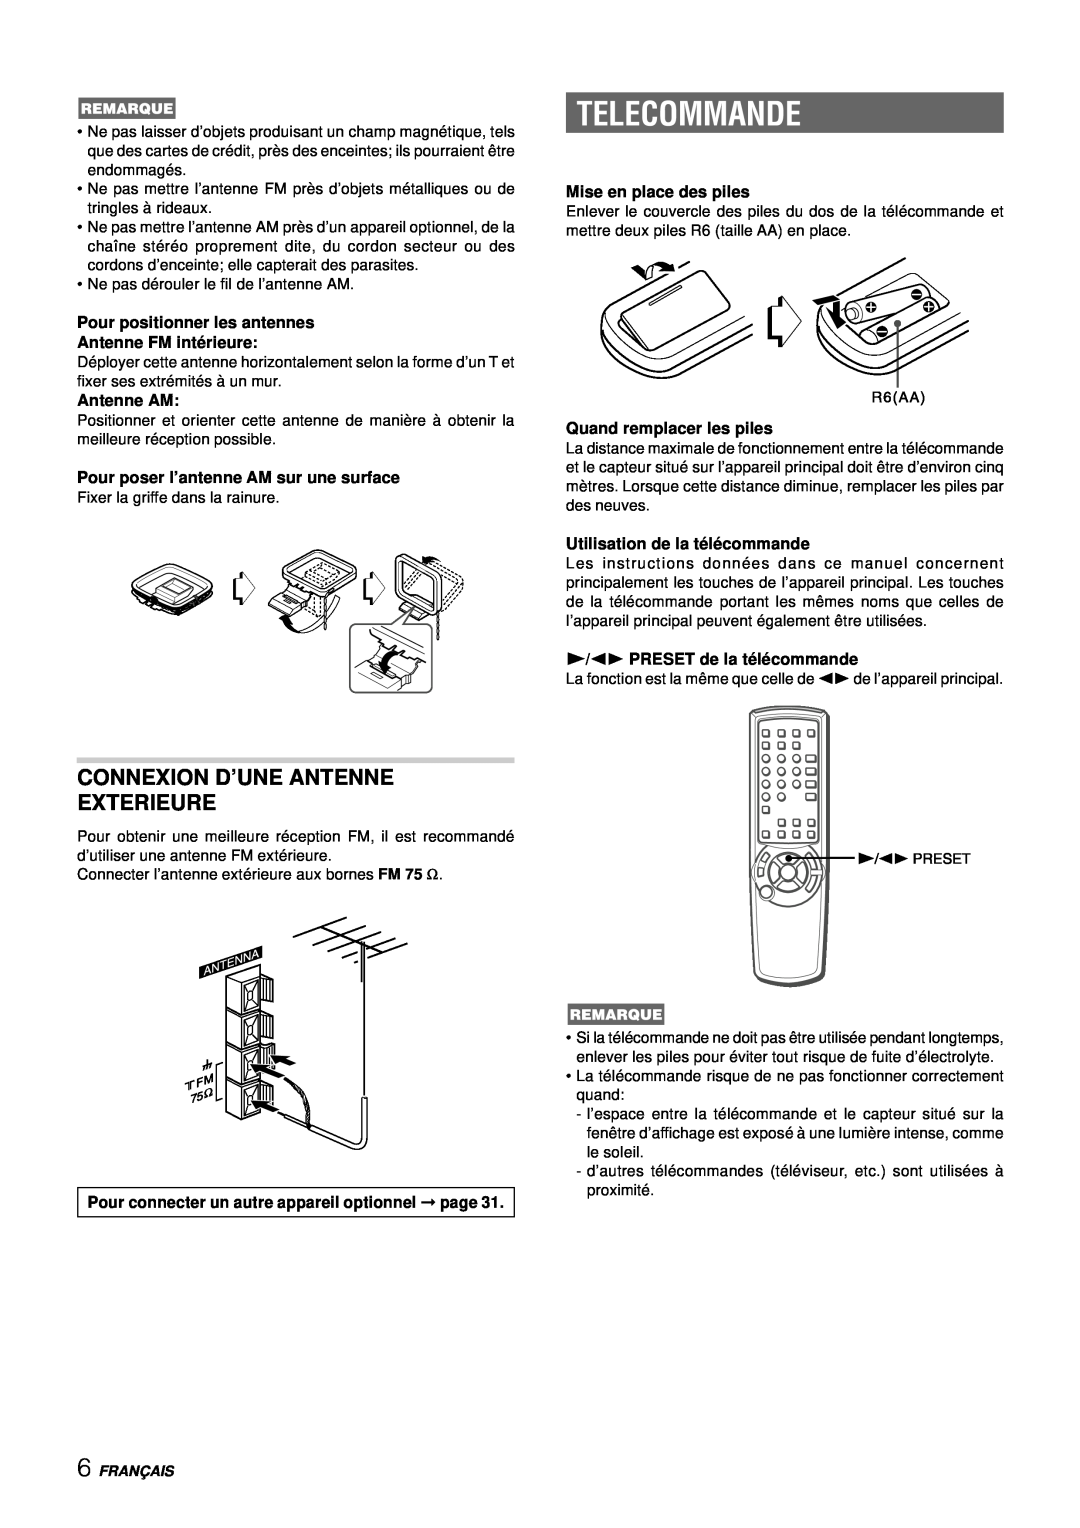 Aiwa NSX-DS8 manual Telecommande, Connexion D’Une Antenne Exterieure, Pour positionner les antennes, Antenne FM inté rieure 